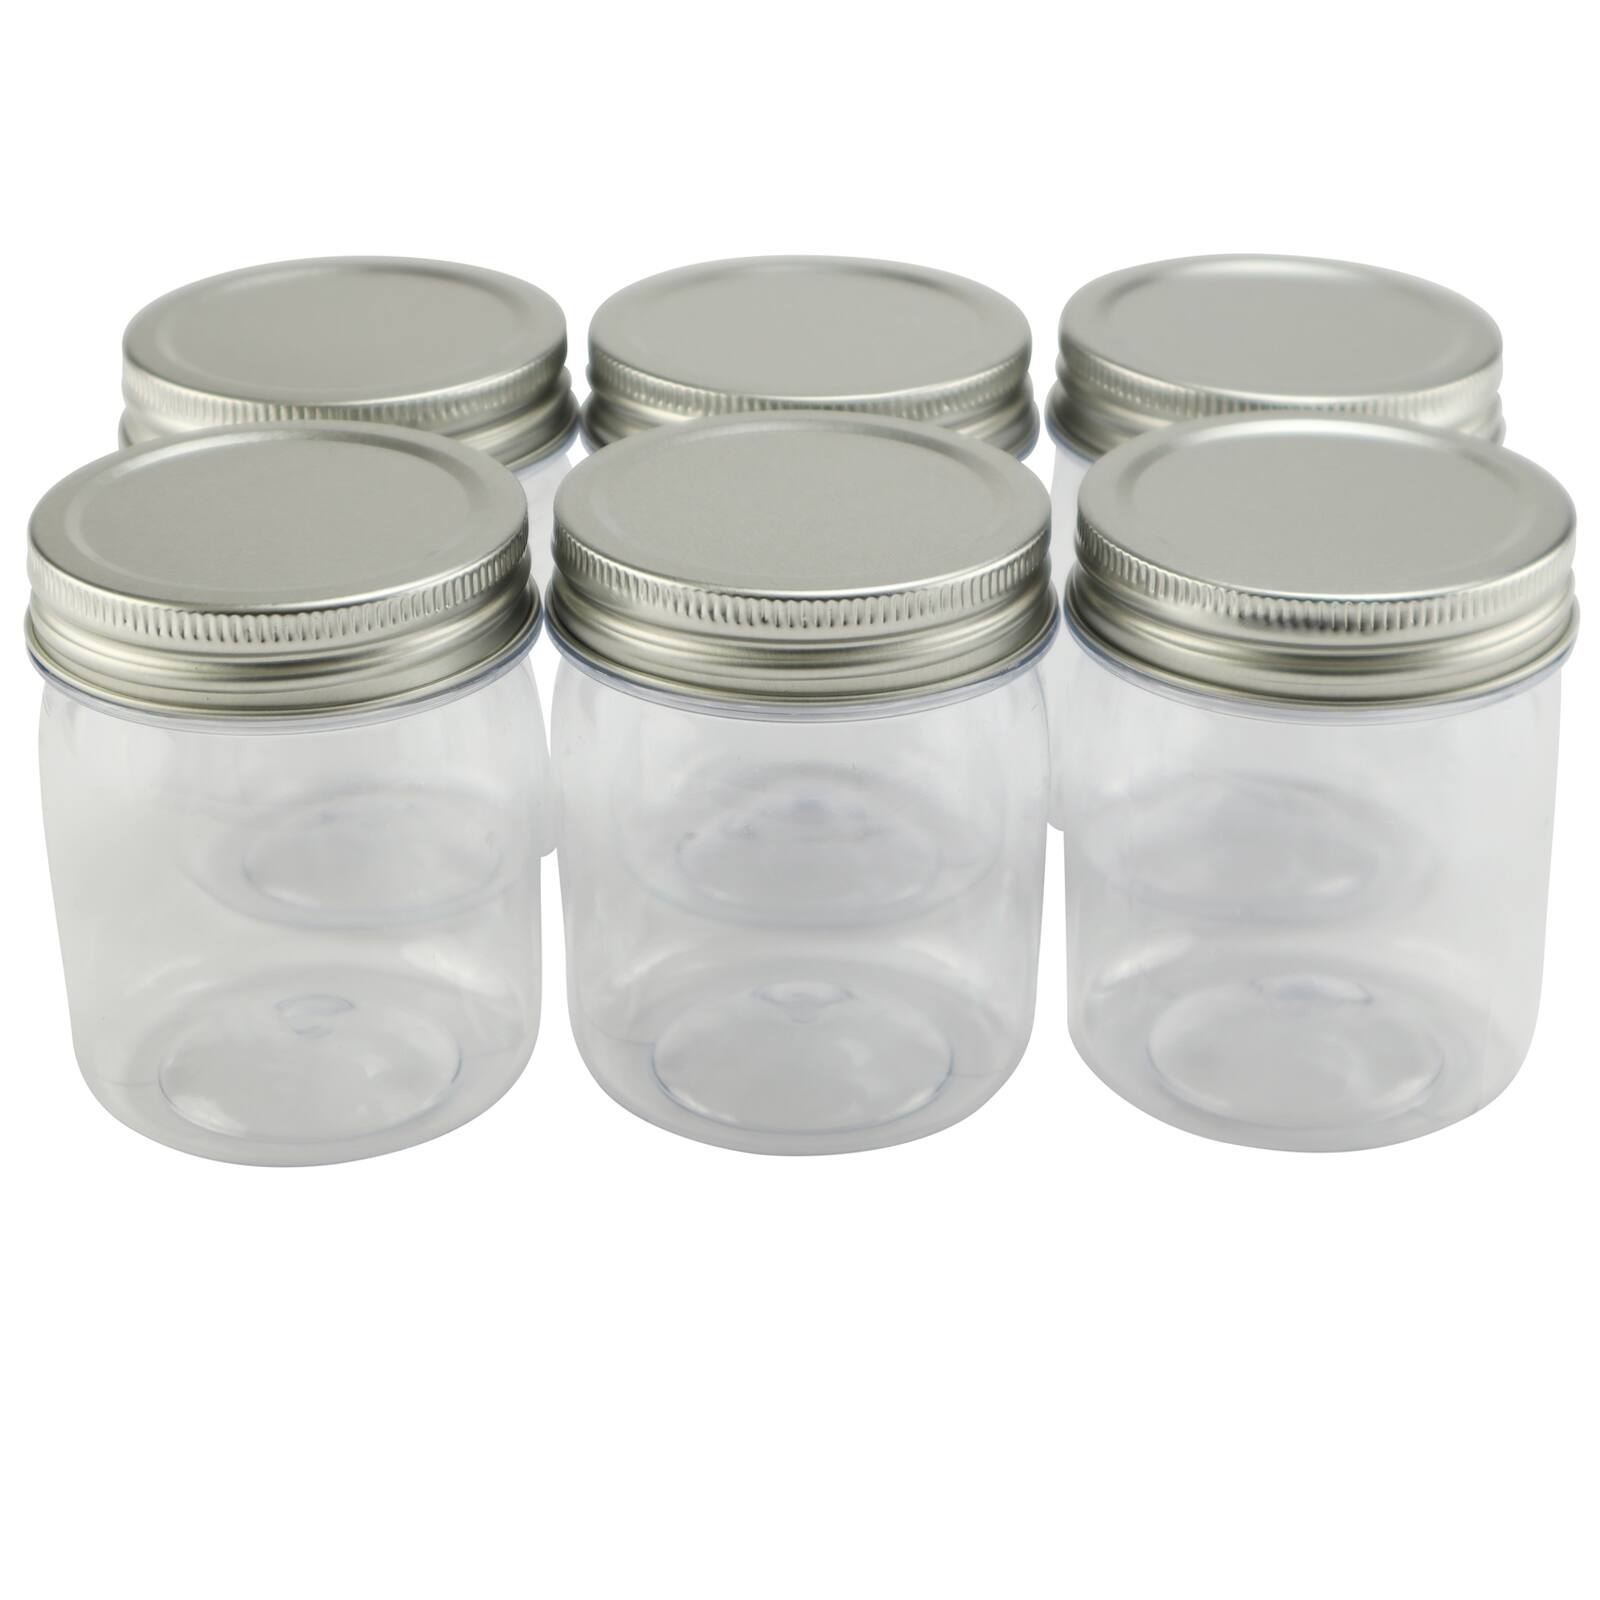 8 oz Mason Jar w lid for DIY